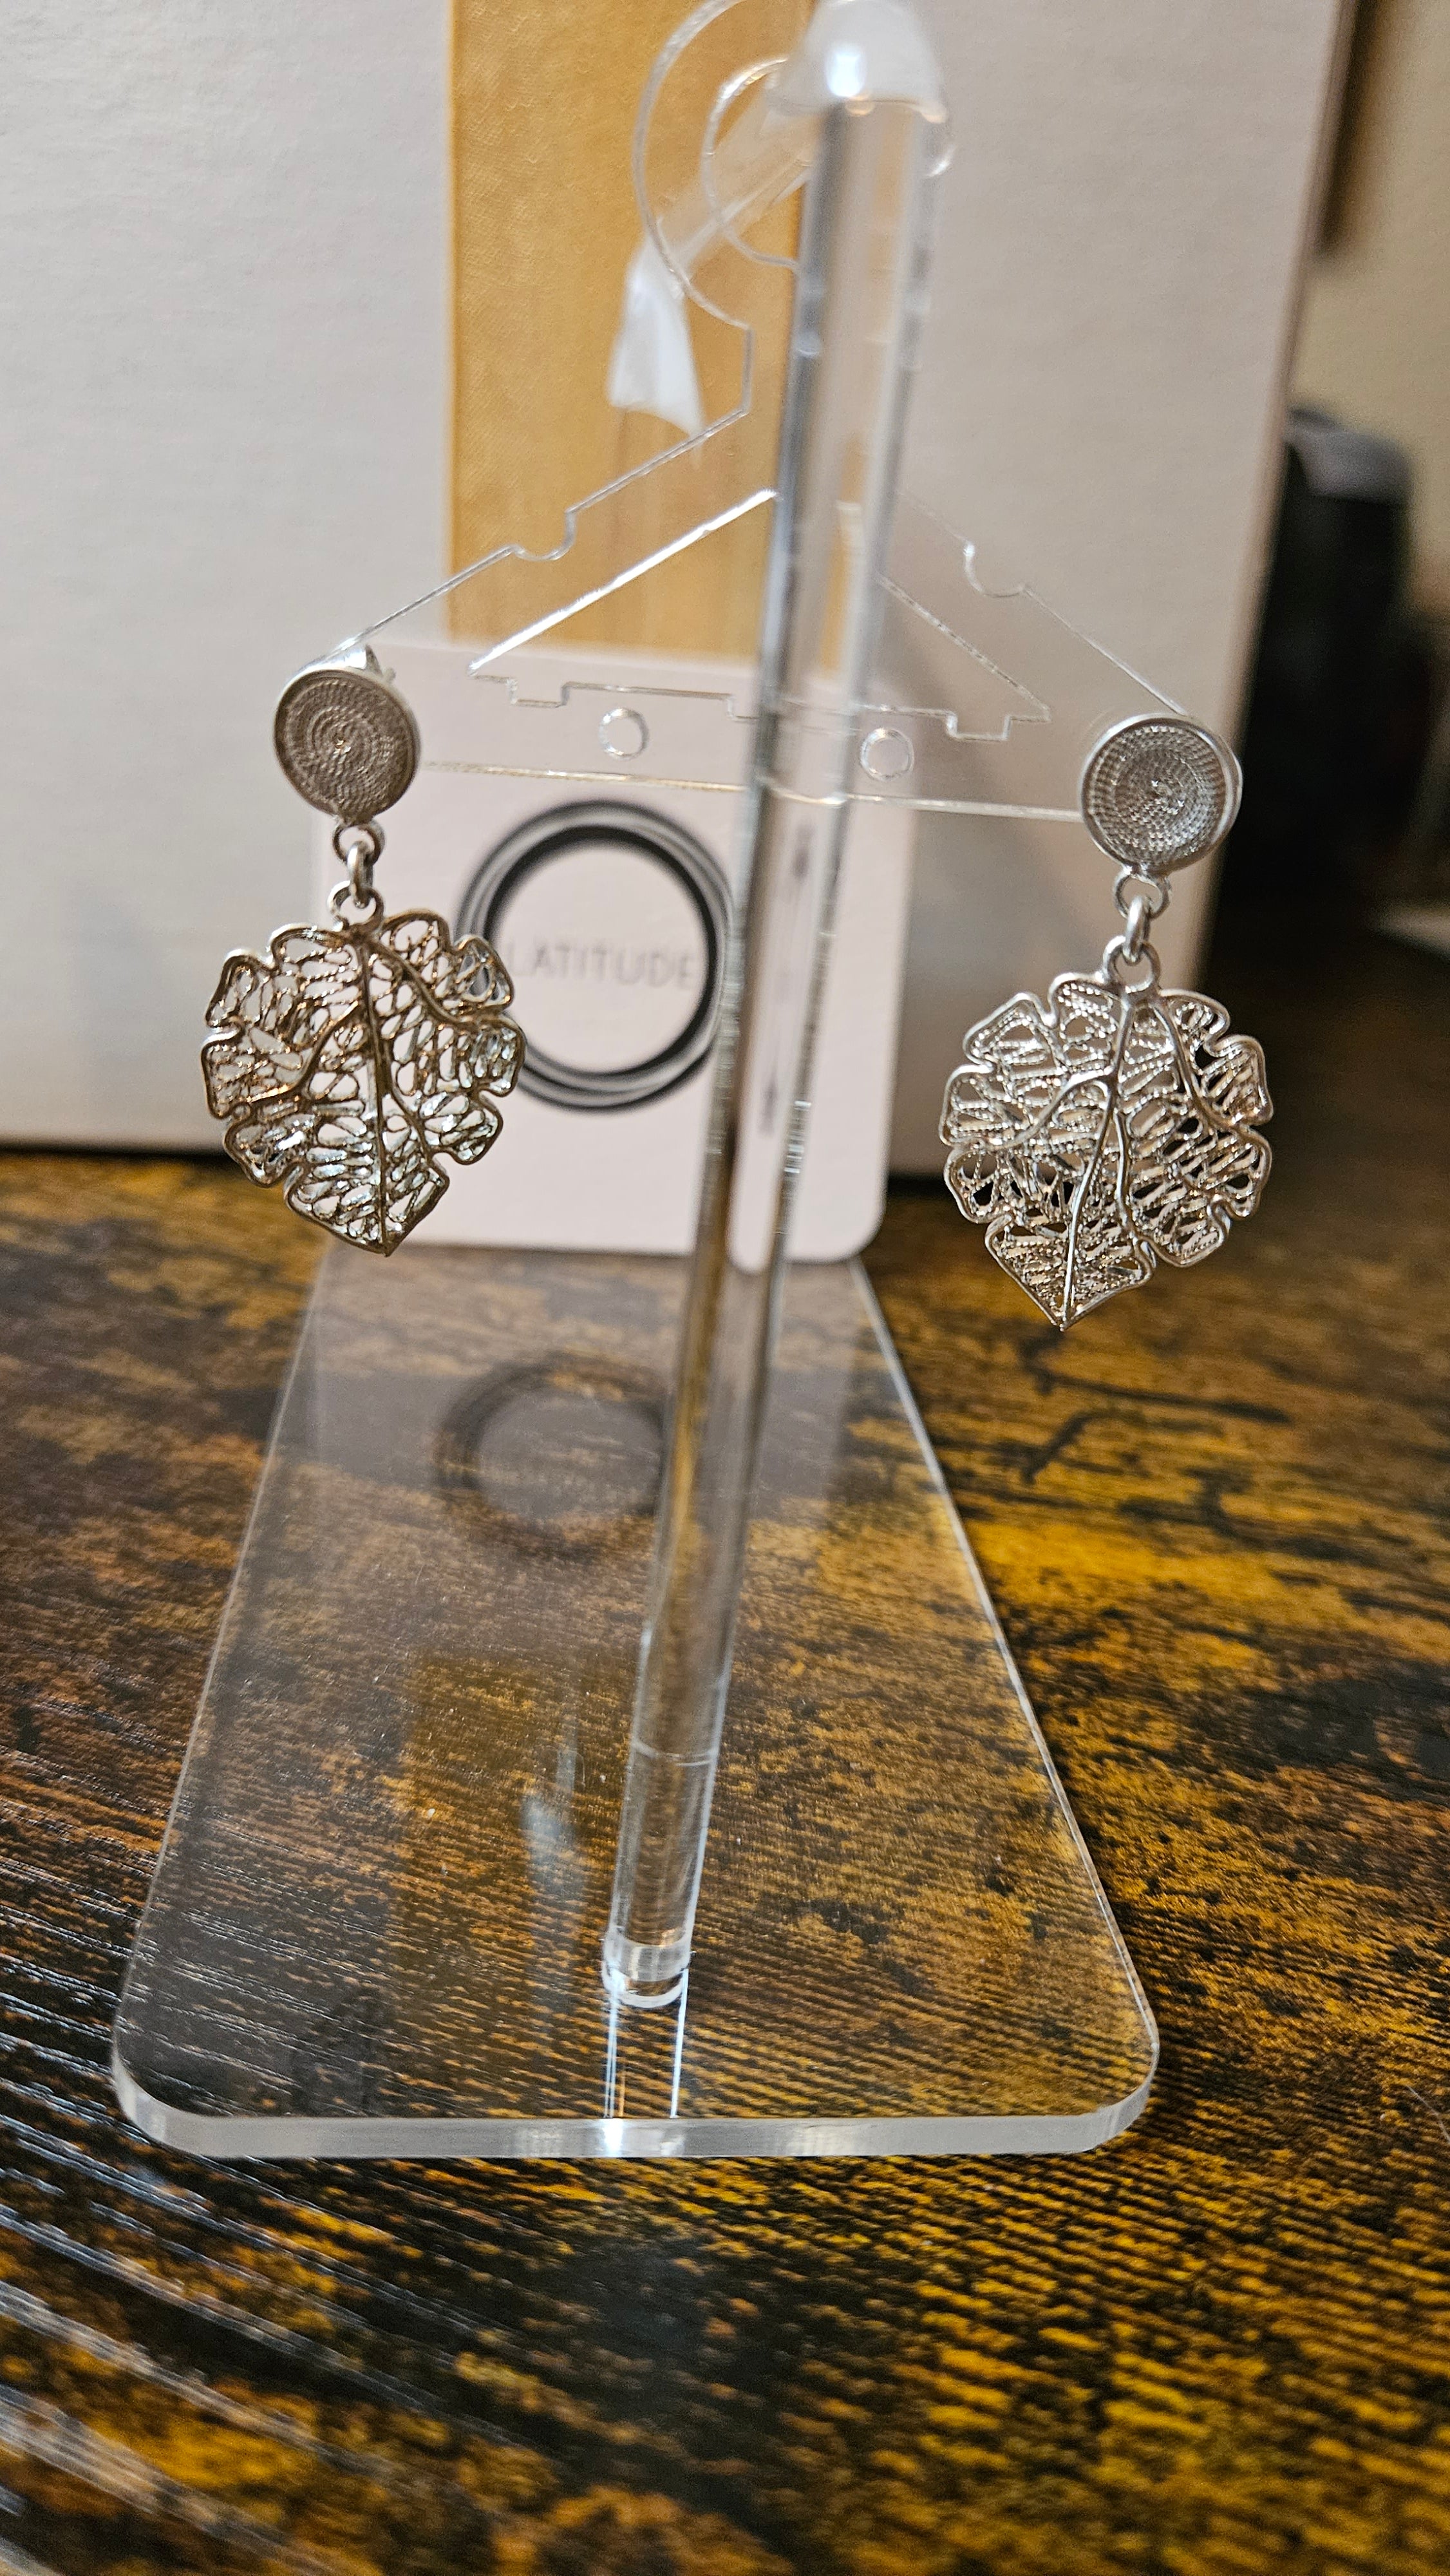 Ecuadorian silver earrings